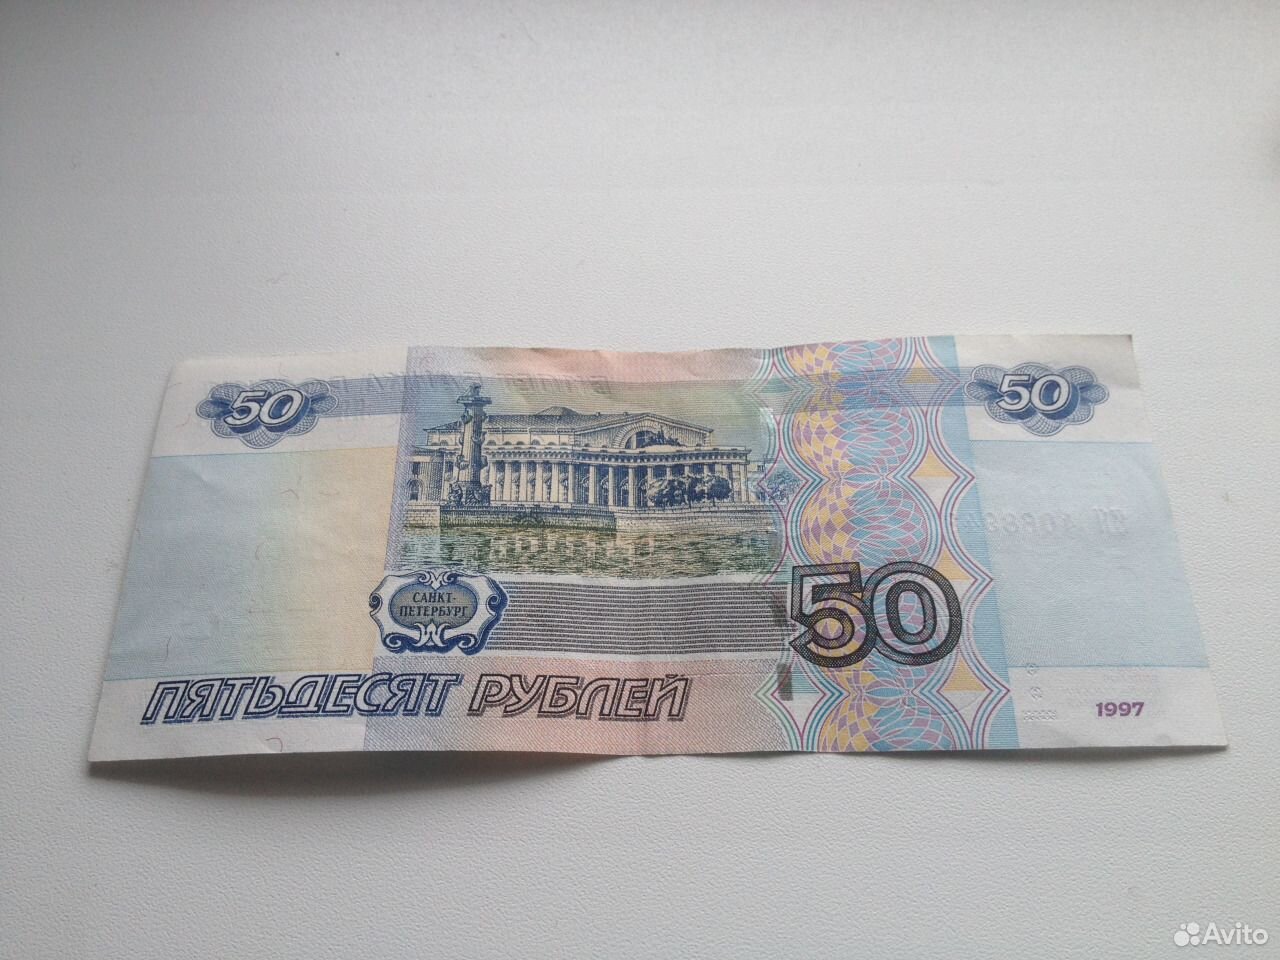 50 б рублей в рублях. 50 Рублей. Купюра 50 рублей. Фотография 50 рублей. Пятьдесят рублей.